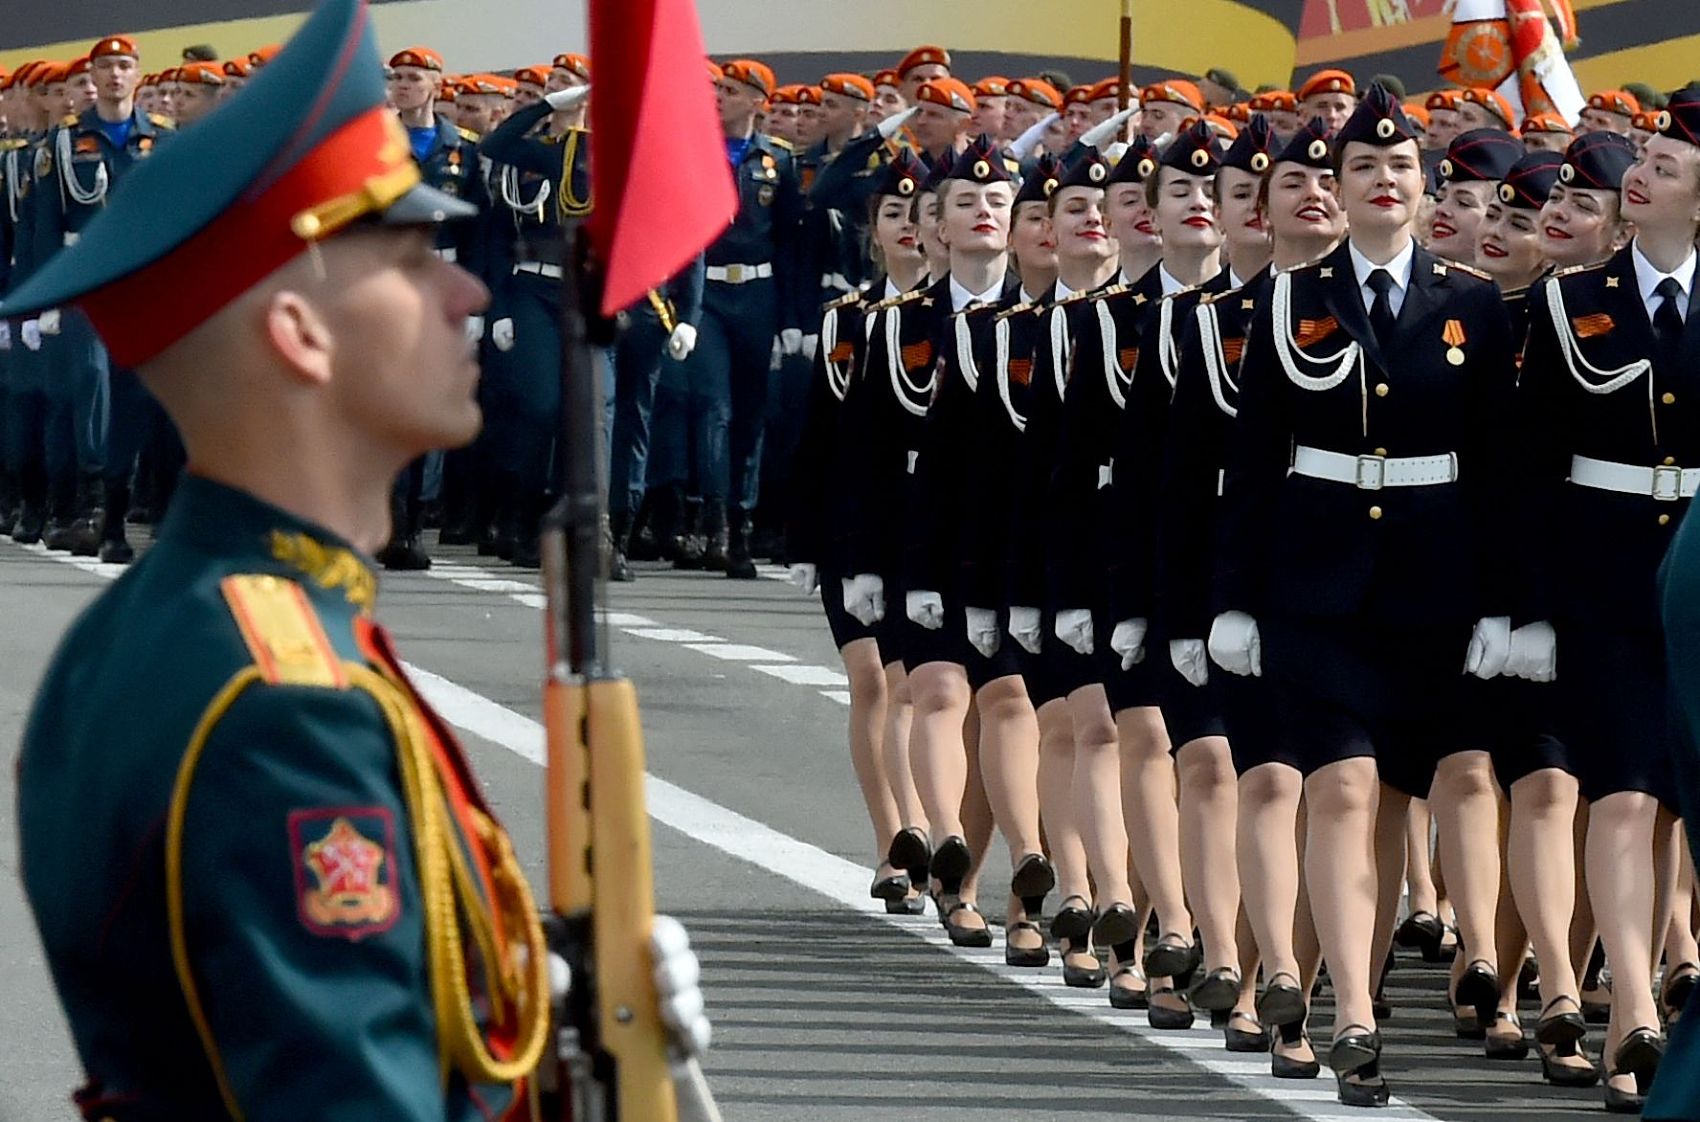 俄罗斯女兵 壁纸图片